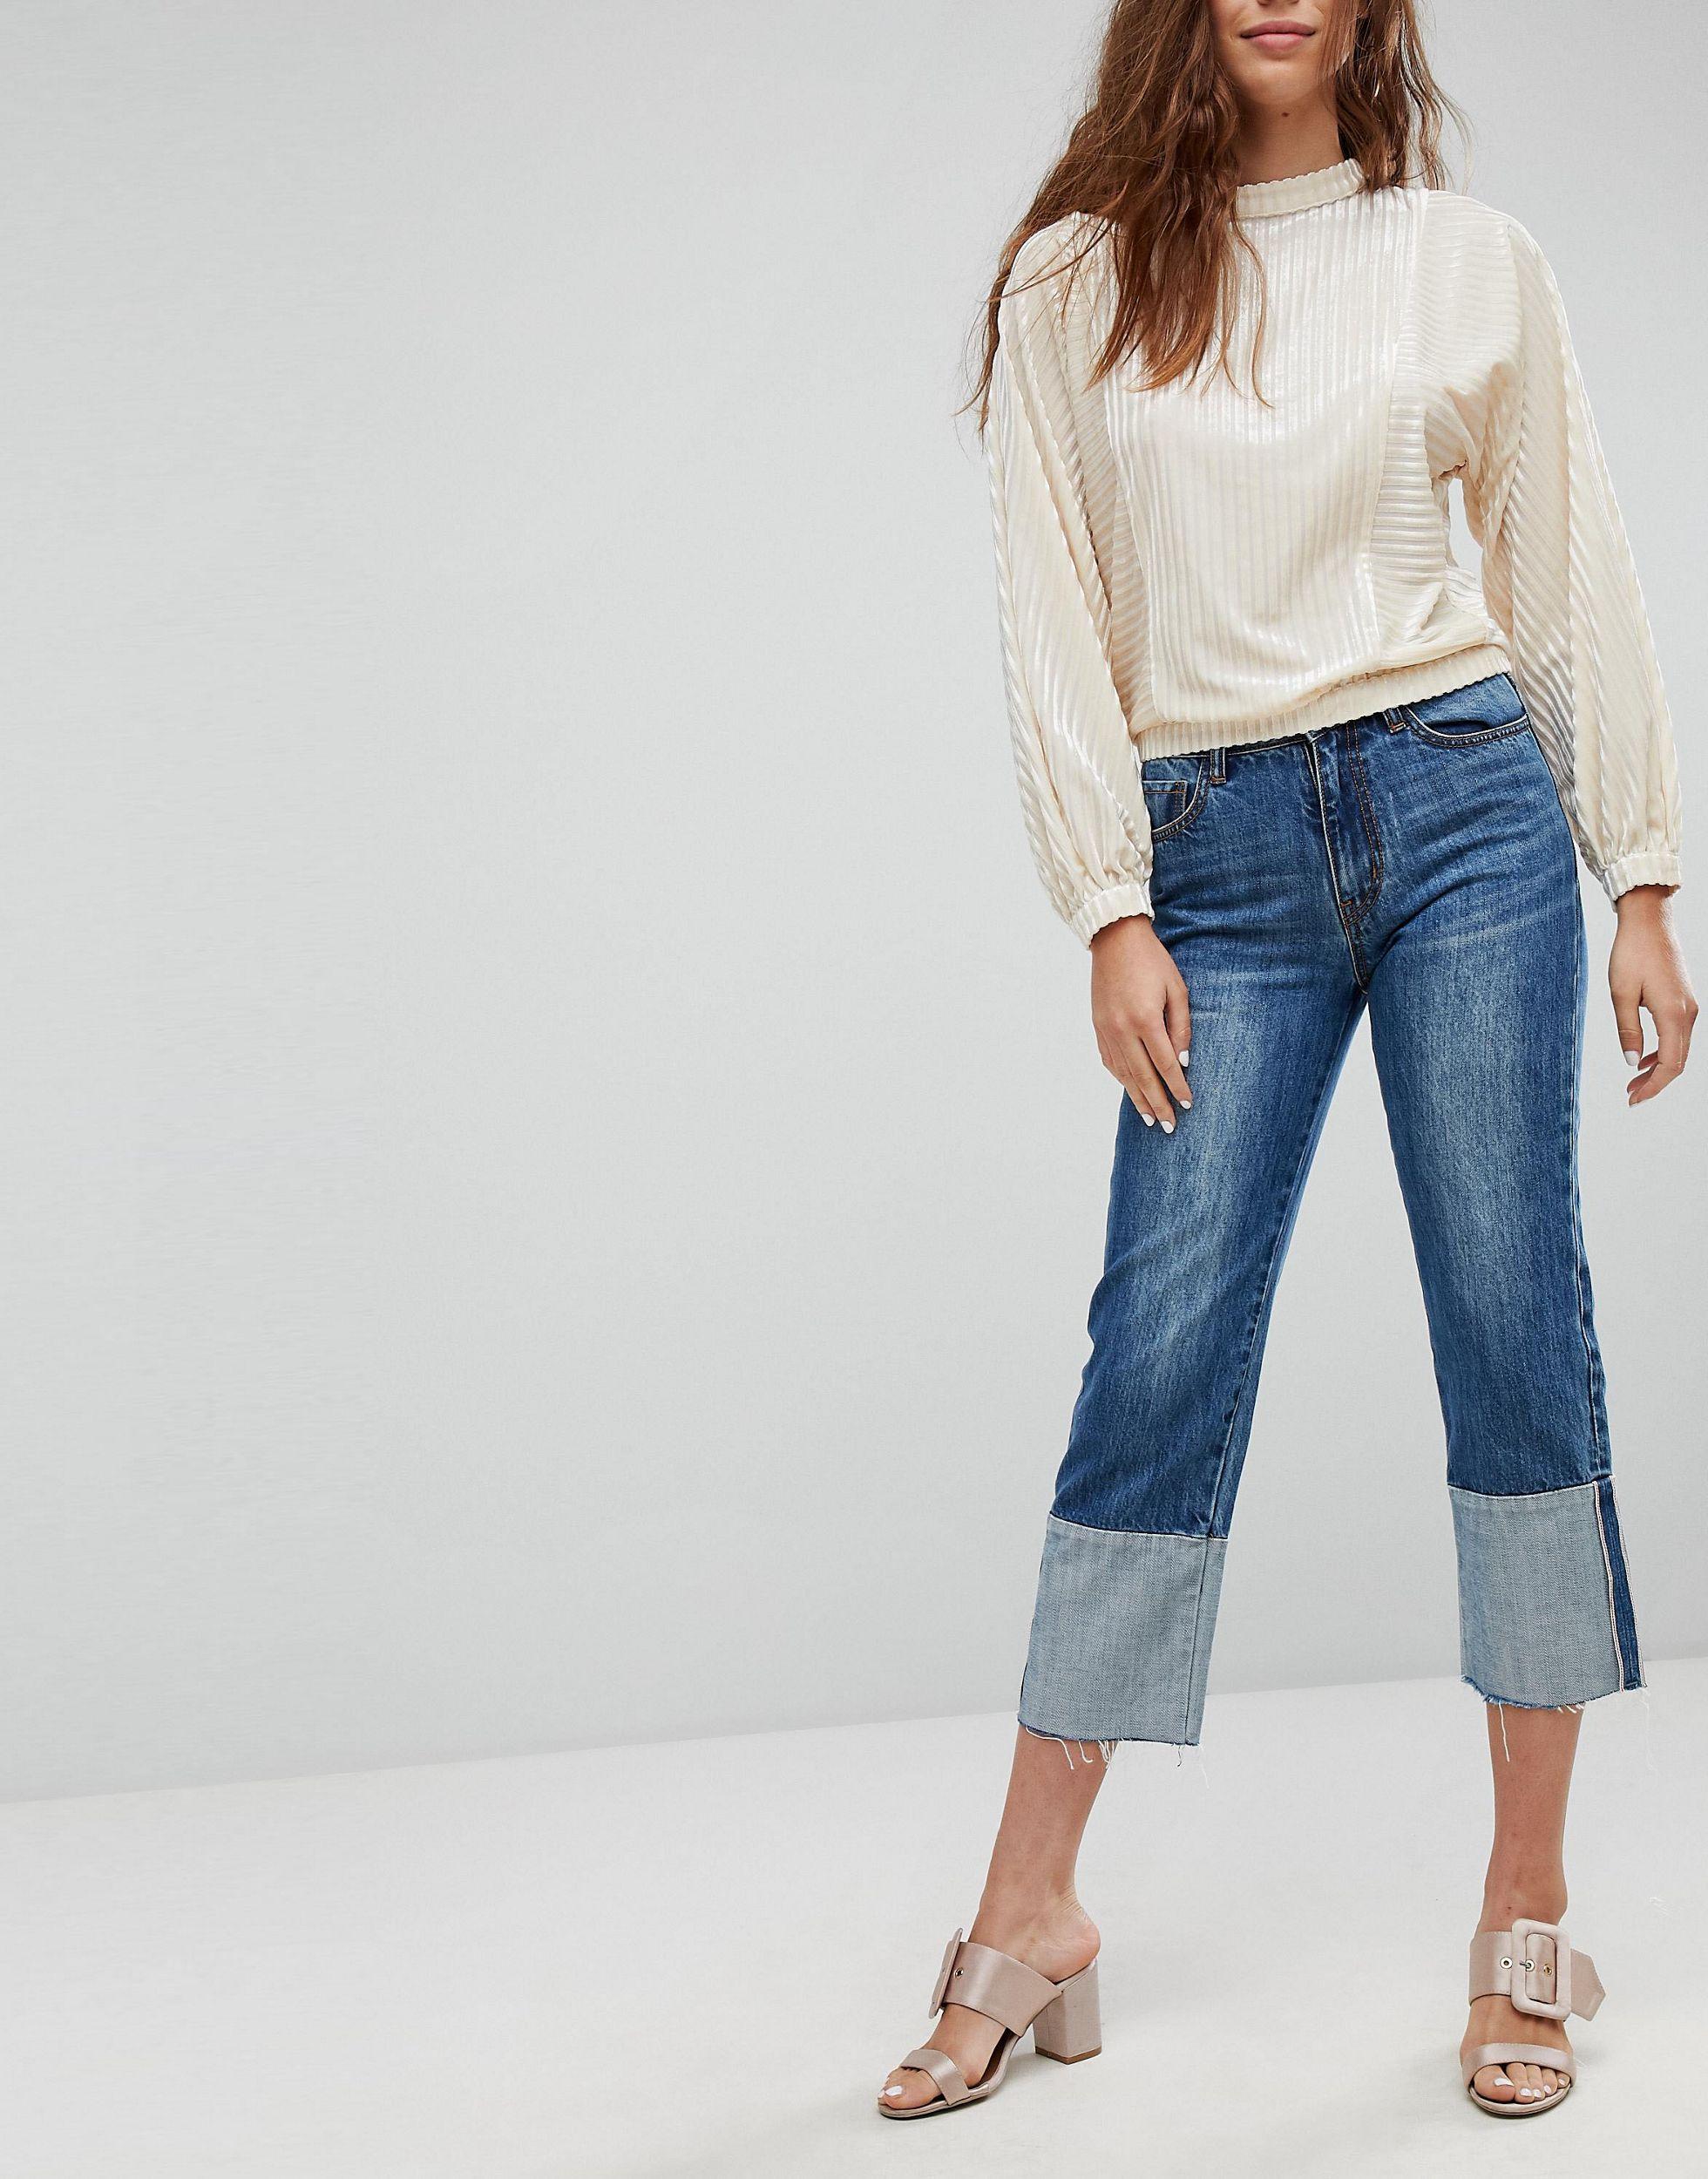 Широкие джинсы модели. Джинсы с модным подворотом. Джинсы с широким подворотом. Широкие укороченные джинсы. Широкие укороченные джинсы женские.